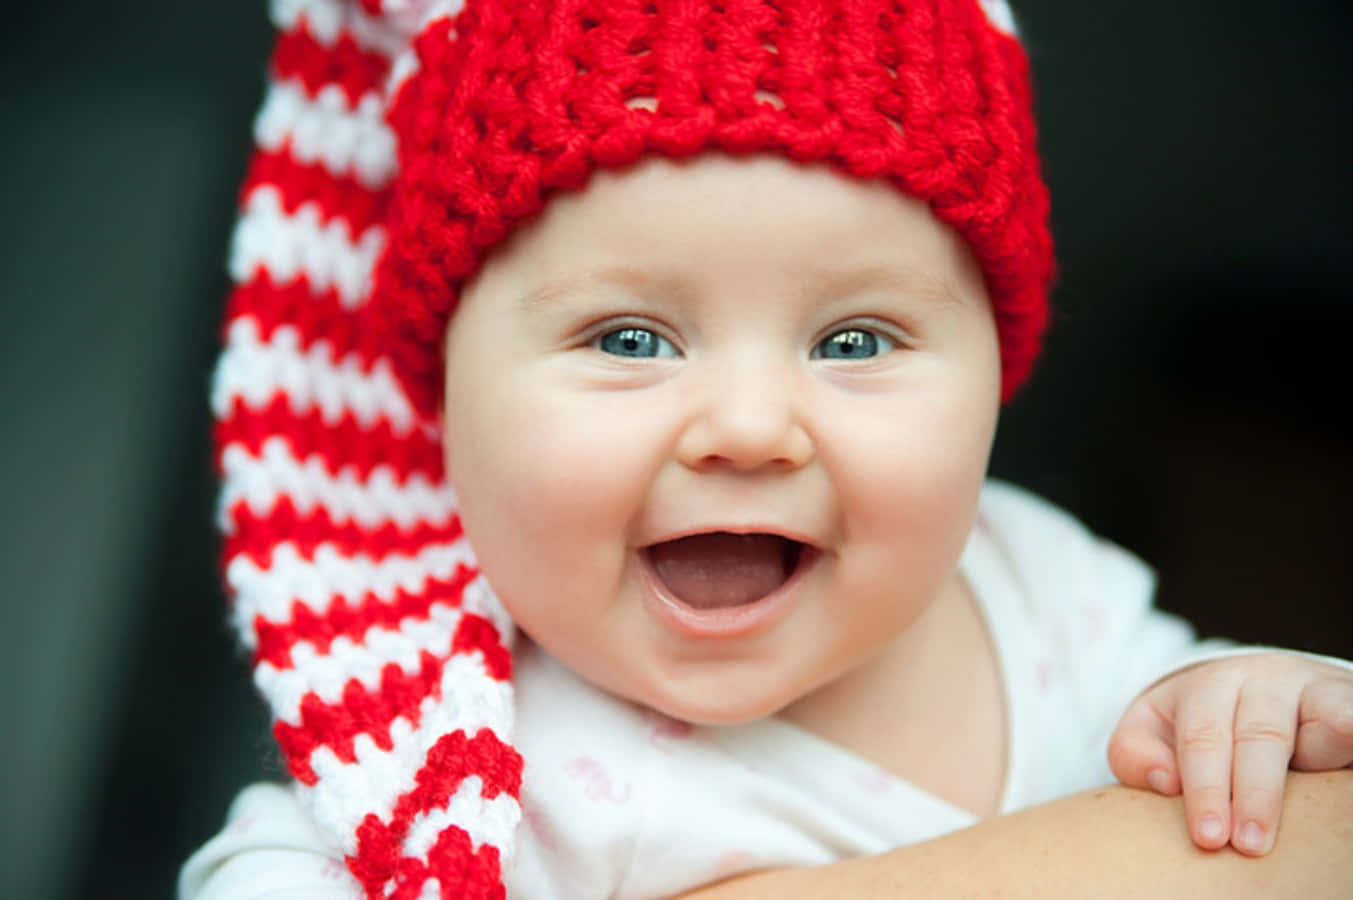 Imagende Un Bebé Sonriendo Con Un Gorro Rojo.